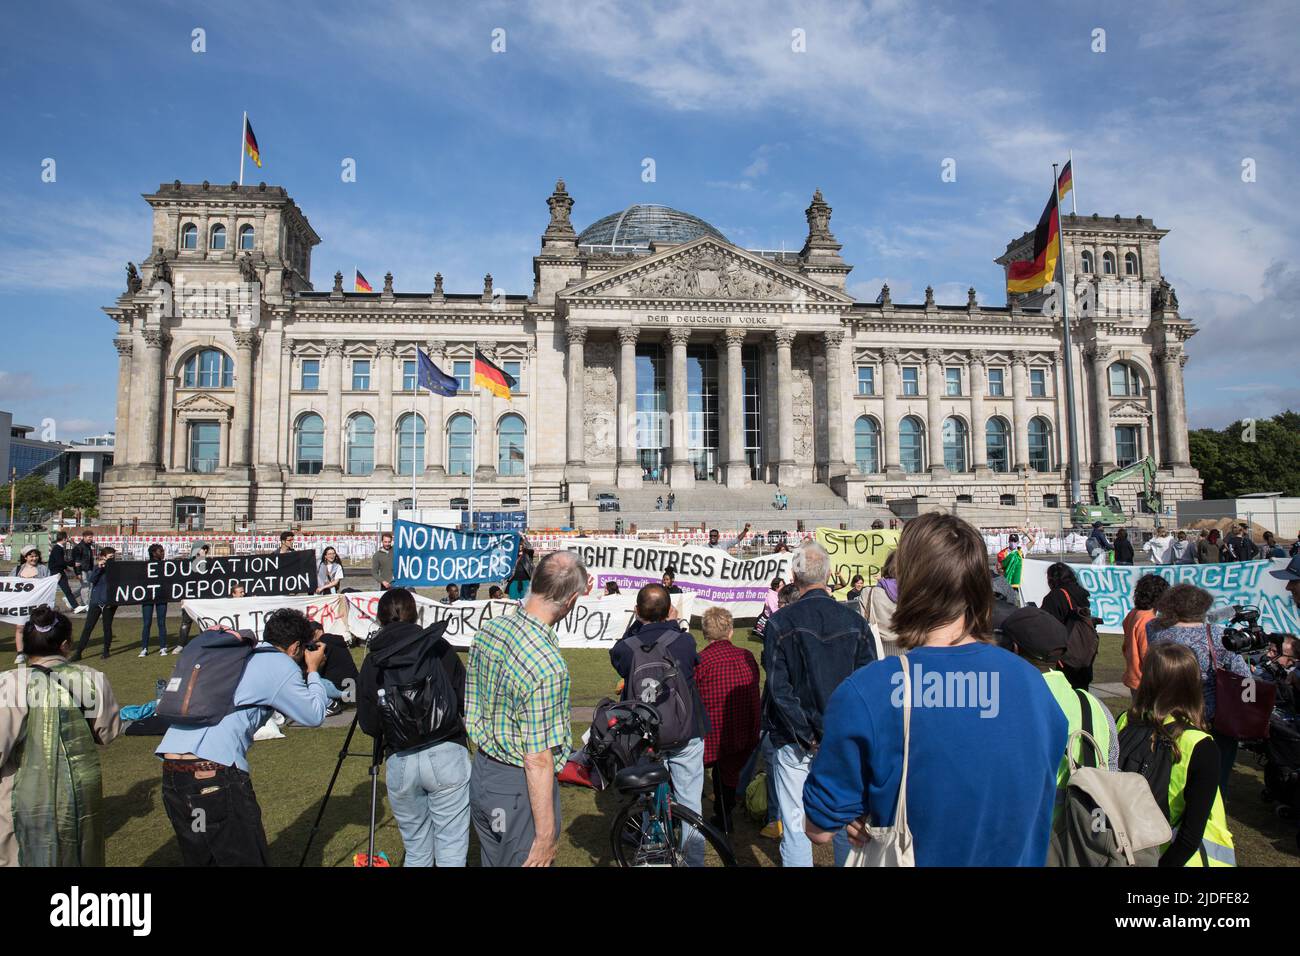 Berlino, Germania. 20th giugno 2022. Rally di fronte al Bundestag, il parlamento federale tedesco, il 20 giugno 2022. I manifestanti chiedevano che la Convenzione di Ginevra sui rifugiati fosse a disposizione di tutti. Hanno affermato che i rifugiati non sono trattati allo stesso modo in Germania, quindi da altri paesi i rifugiati ricevono più attenzione dei rifugiati provenienti da diverse parti del mondo. I manifestanti chiedono inoltre che i rifugiati abbiano bisogno del libero accesso ai permessi di lavoro e all’istruzione. (Credit Image: © Michael Kuenne/PRESSCOV via ZUMA Press Wire) Foto Stock